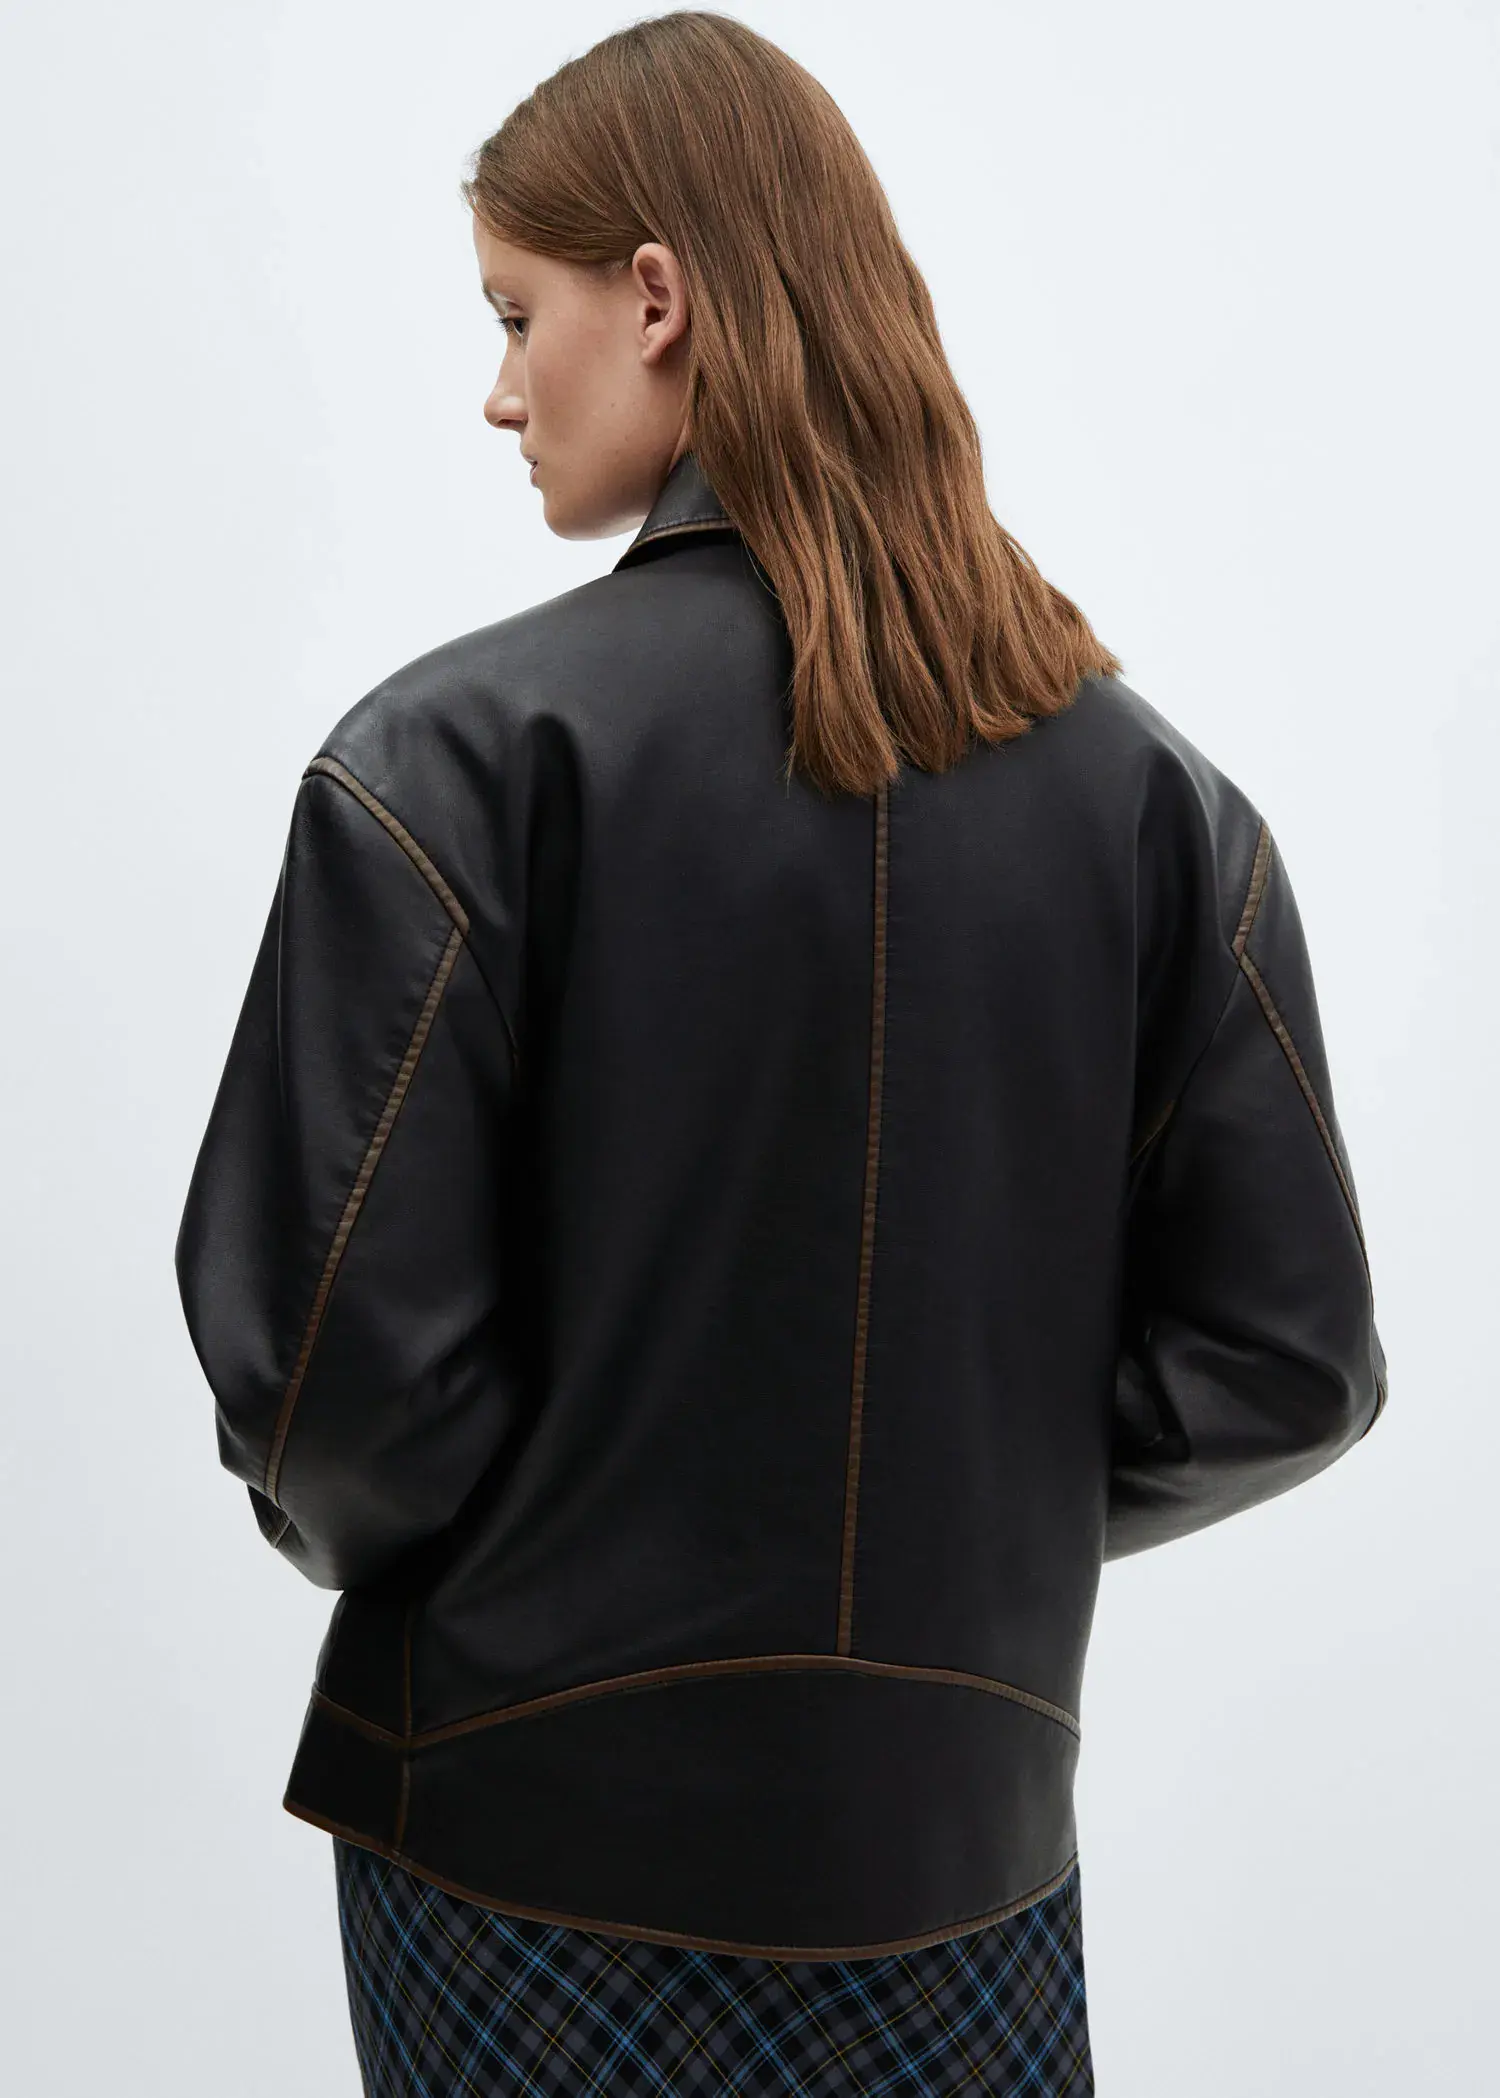 Mango Worn leather effect jacket. 3